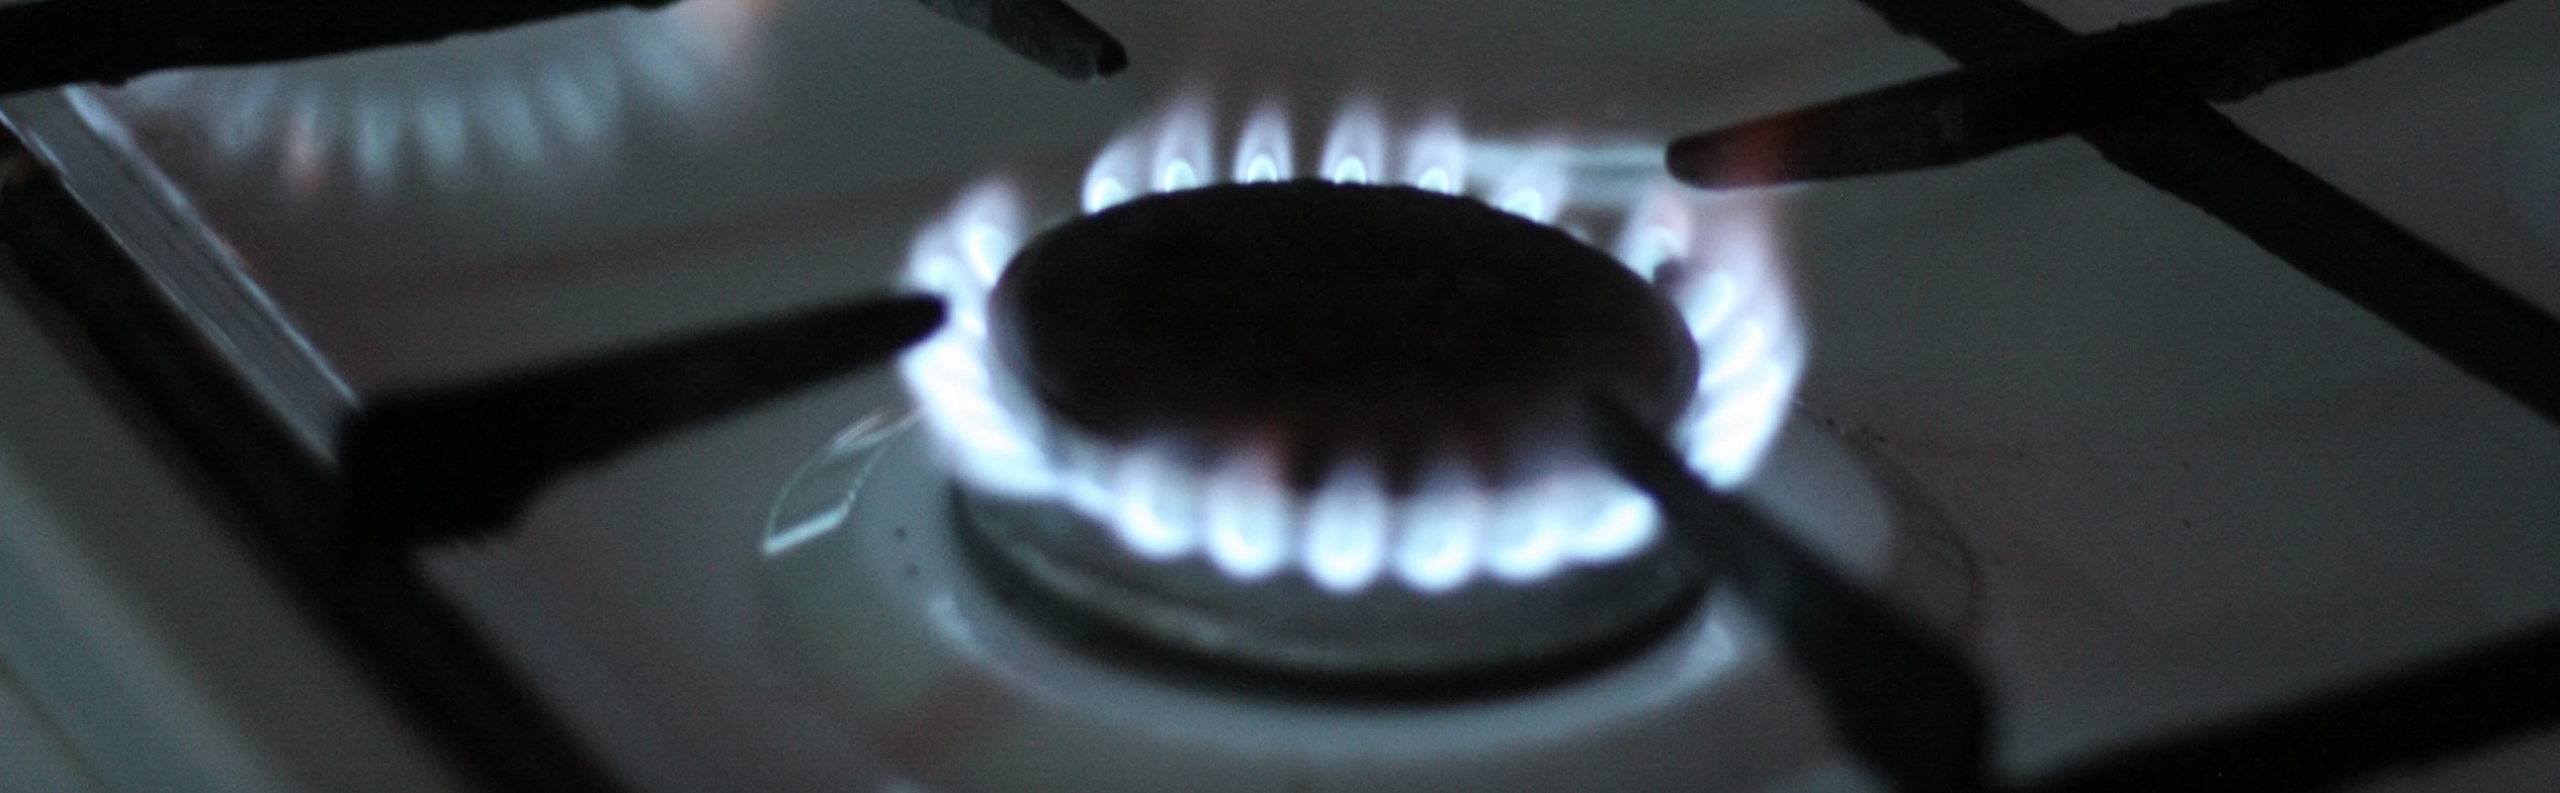 Европа не замерзает назло «Газпрому»: цены на топливо упали почти в десять раз